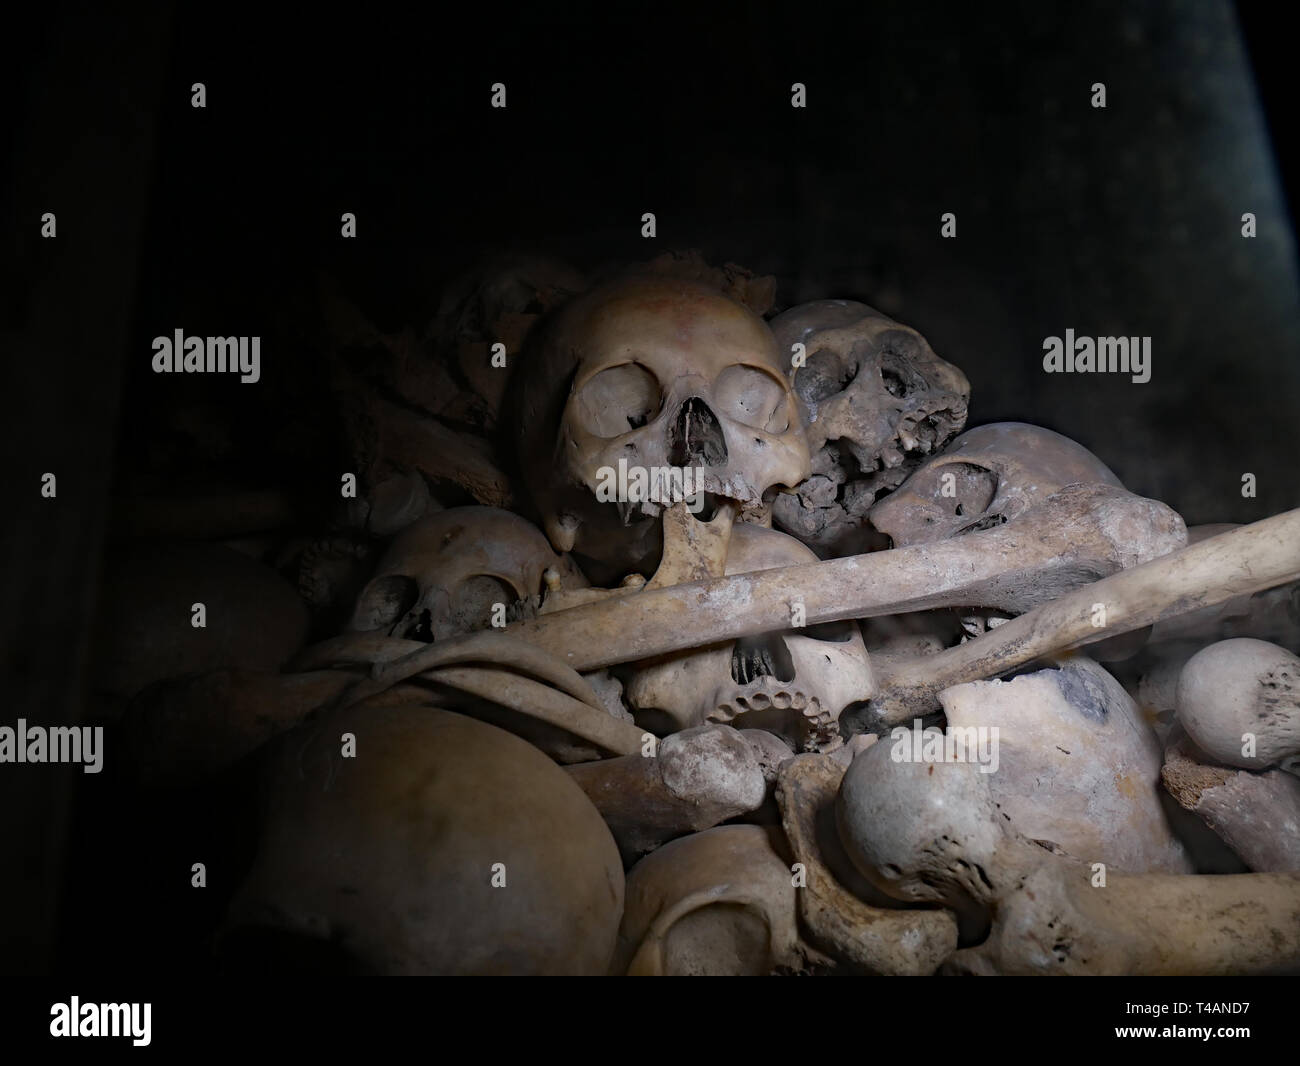 Schädel und Knochen in der Tötung Höhlen von Kambodscha. Phnom Sampeau entfernt, in Battambang, Kambodscha, 01-12-2018. Stockfoto